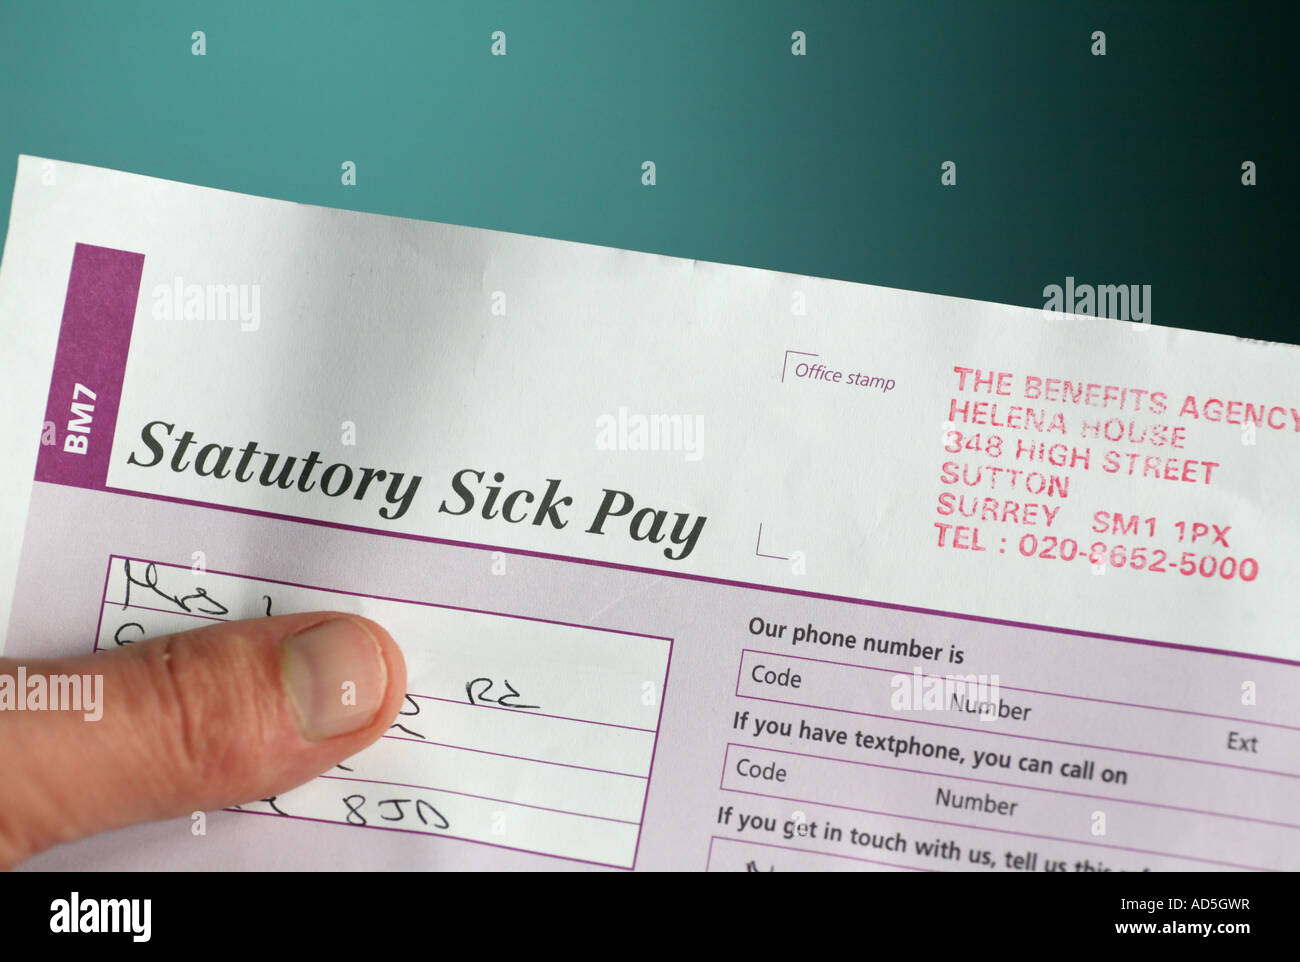 statutory sick pay Stock Photo Alamy